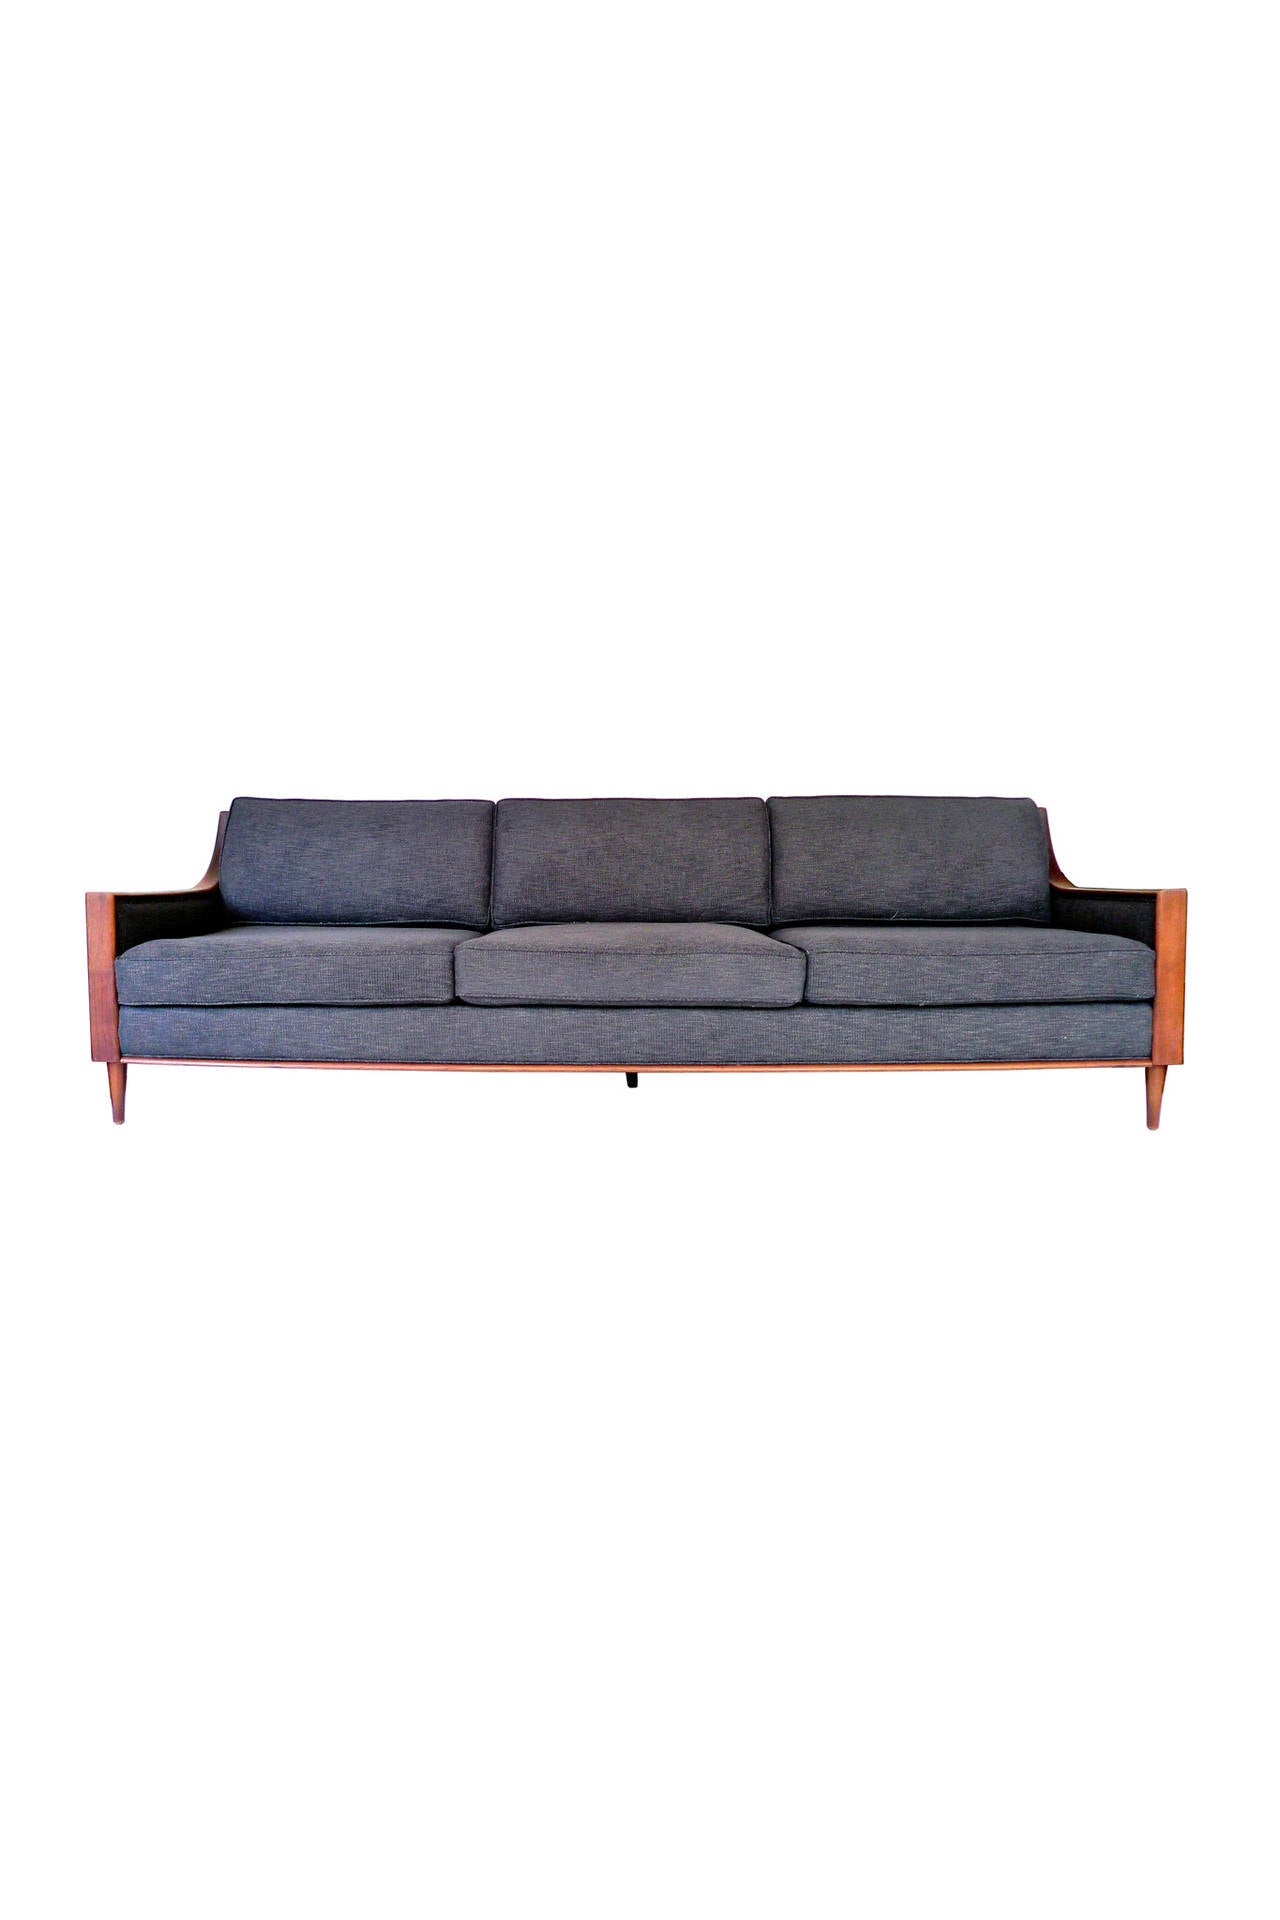 Scandinavian Modern Reupholstered Mid-Century Scandinavian Sofa